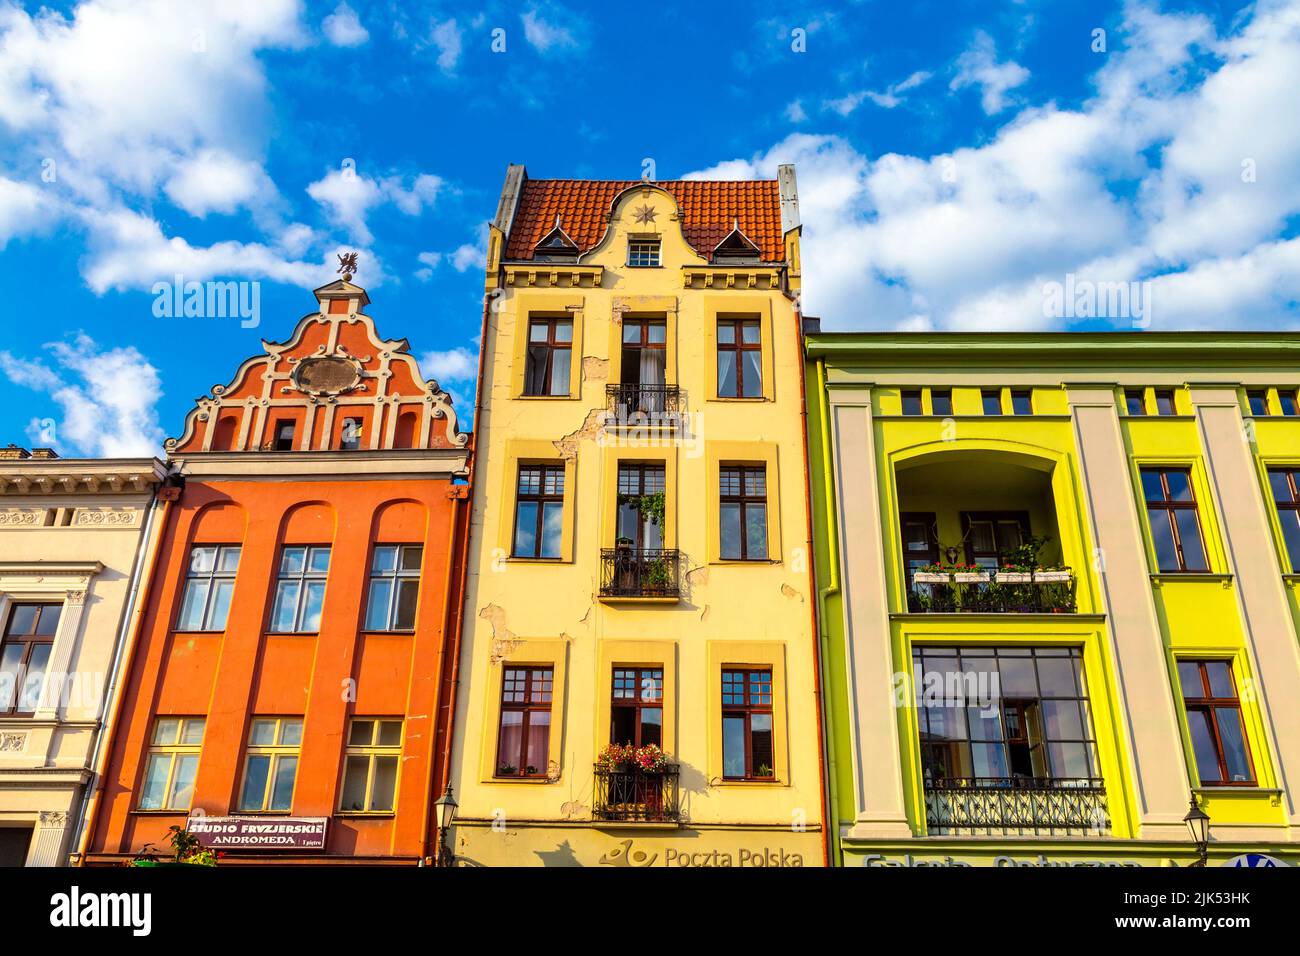 Farbenfrohe Mietshäuser am Rynek Nowomiejski (Marktplatz der Neustadt) in Torun, Polen Stockfoto